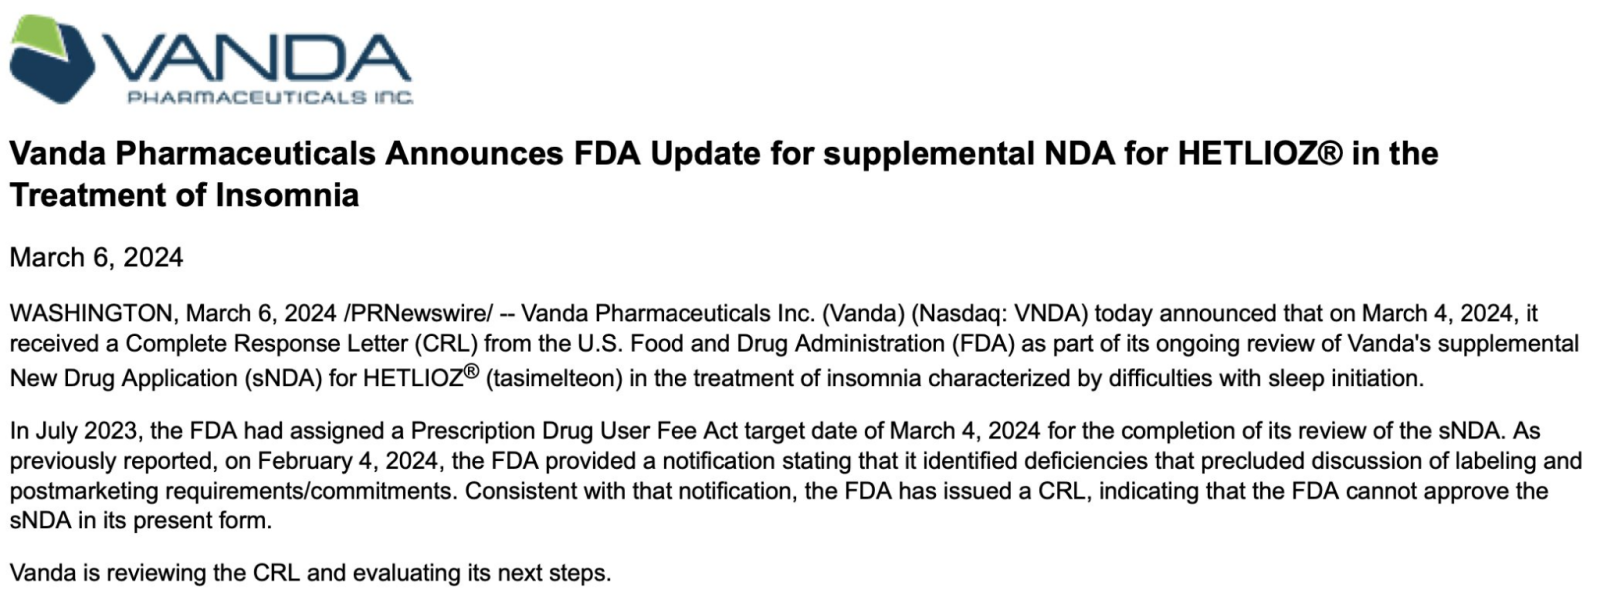 $万达生物制药 (VNDA.US)$ ⚠️ 美国食品药品管理局于3月4日发布了用于治疗失眠的HETLIOZ® snDa的CRL 🙁 🔎 VNDA正在审查CRL并评估后续步骤... 🗓️ PDUFA 日期：24 年 3 月 4 日